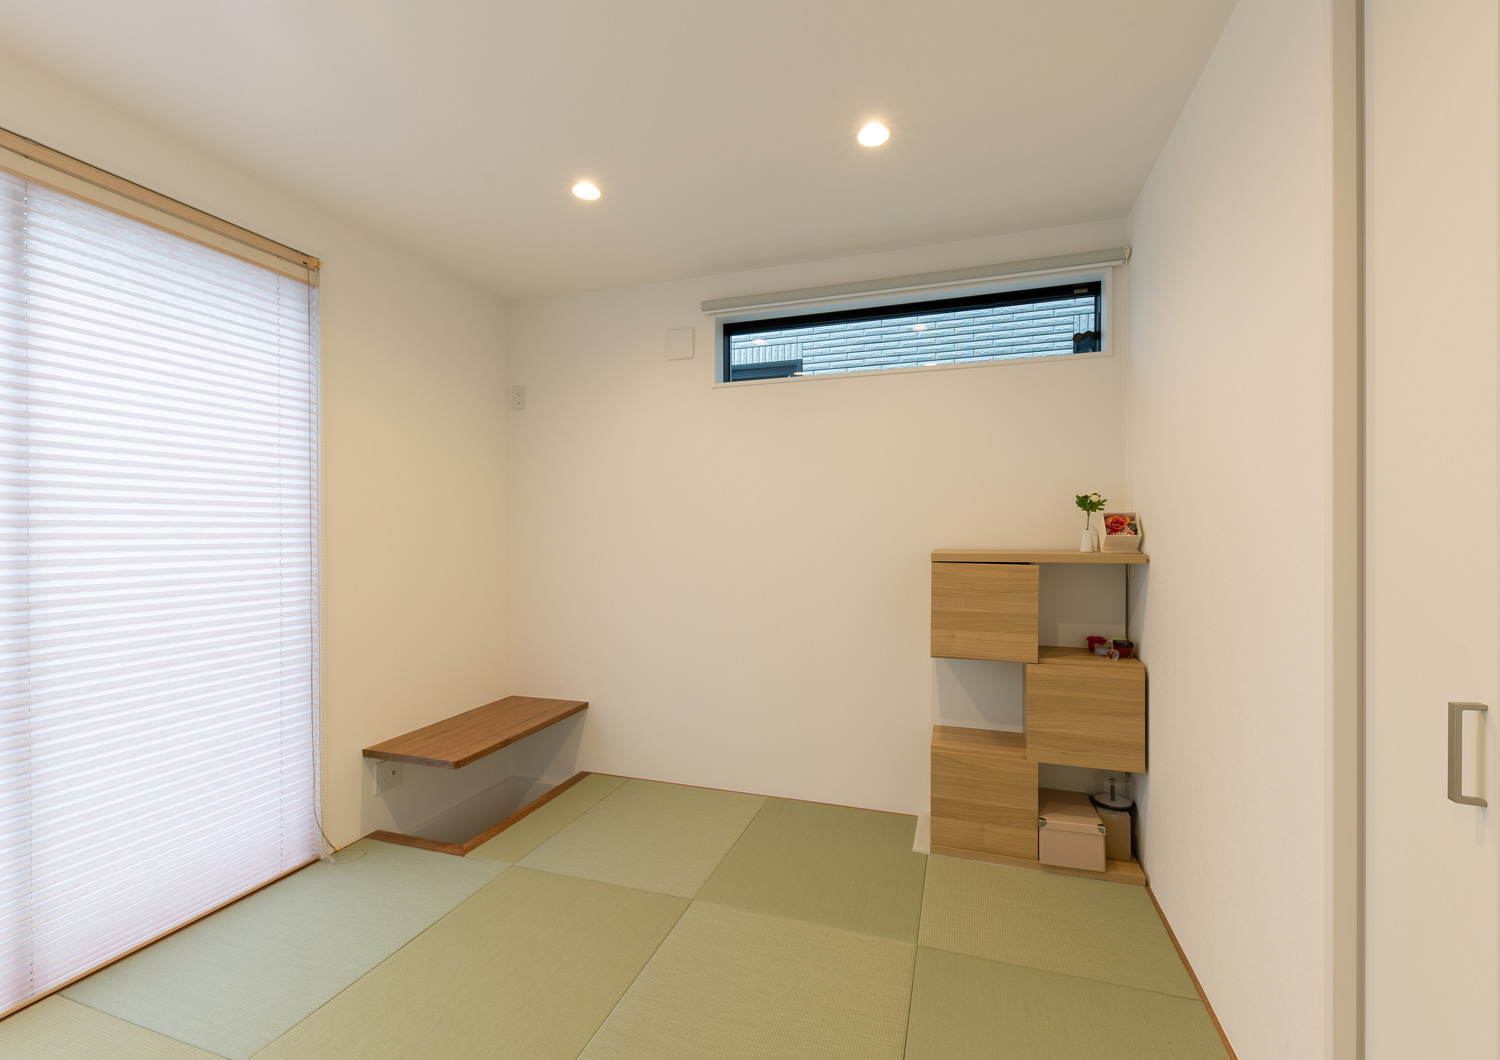 壁付けのデスクや木の棚が設けられた琉球畳の和室・デザイン住宅